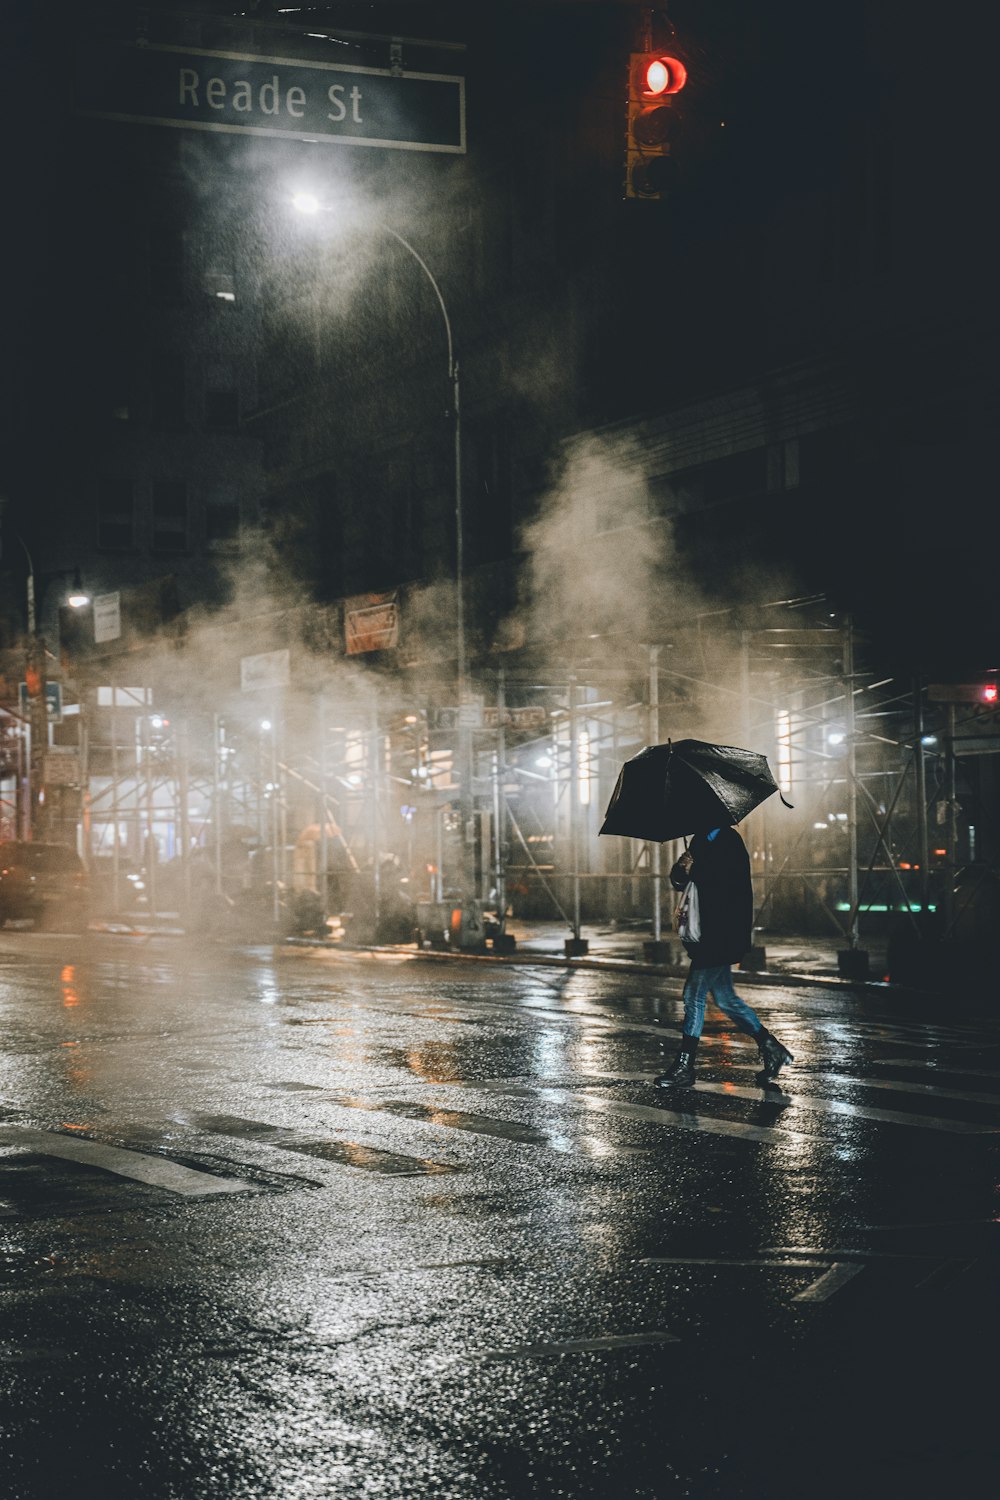 비오는 날 거리에서 우산을 들고 검은 재킷을 입은 사람 사진 – Unsplash의 무료 미국 이미지